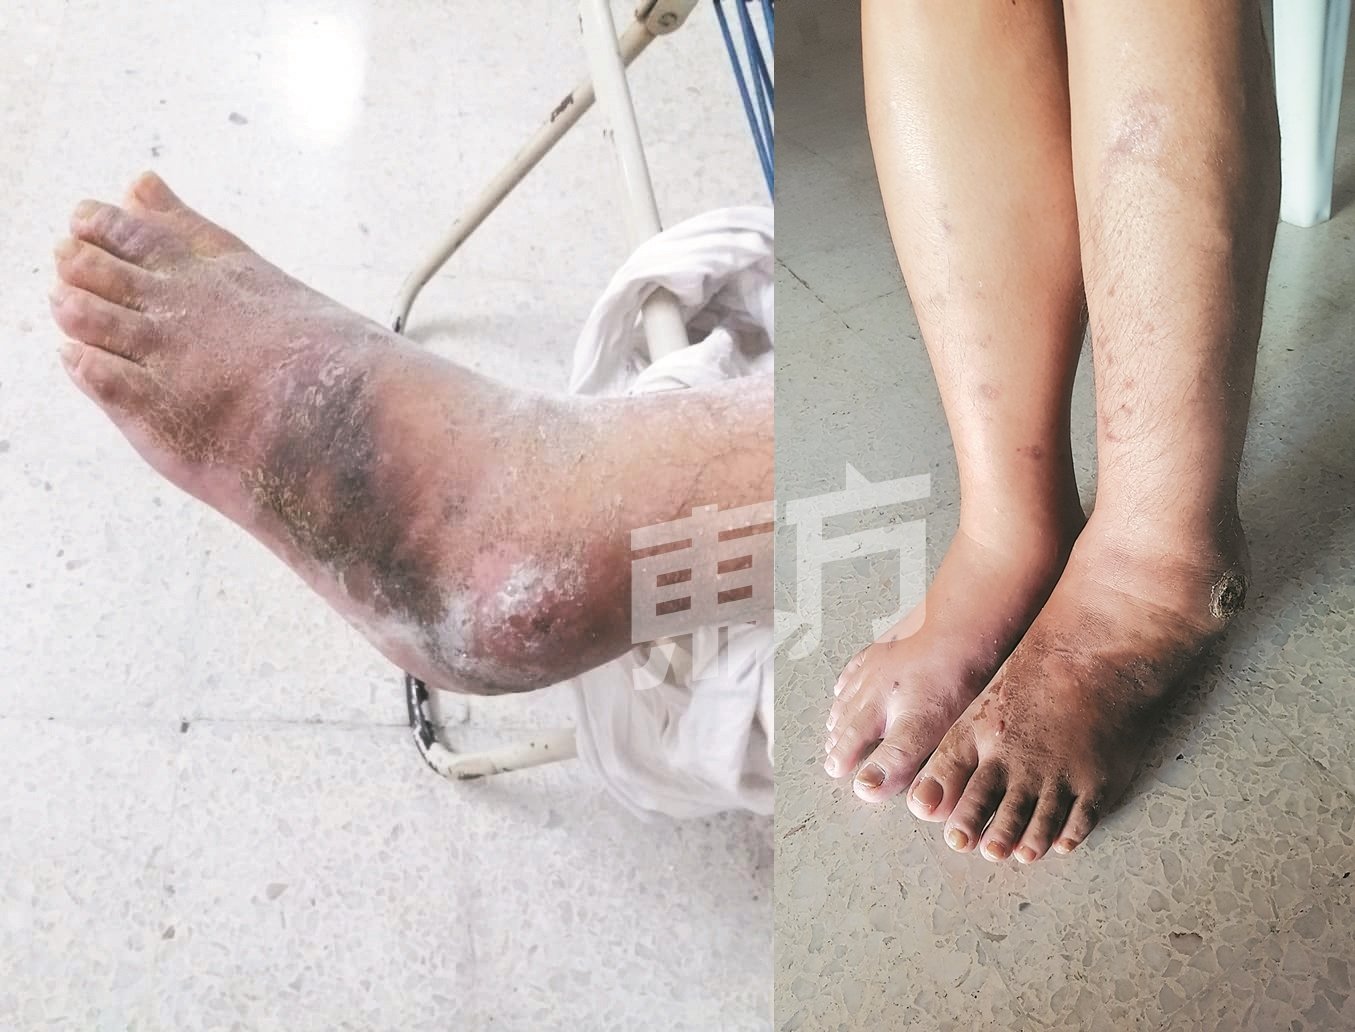 由于患有轻微糖尿病，罗佑丝包石膏后伤口恶化（左）。经过中医师治疗，罗佑丝的脚已有好转（右），然而却负担不起医费。（摄影：田咏逸）